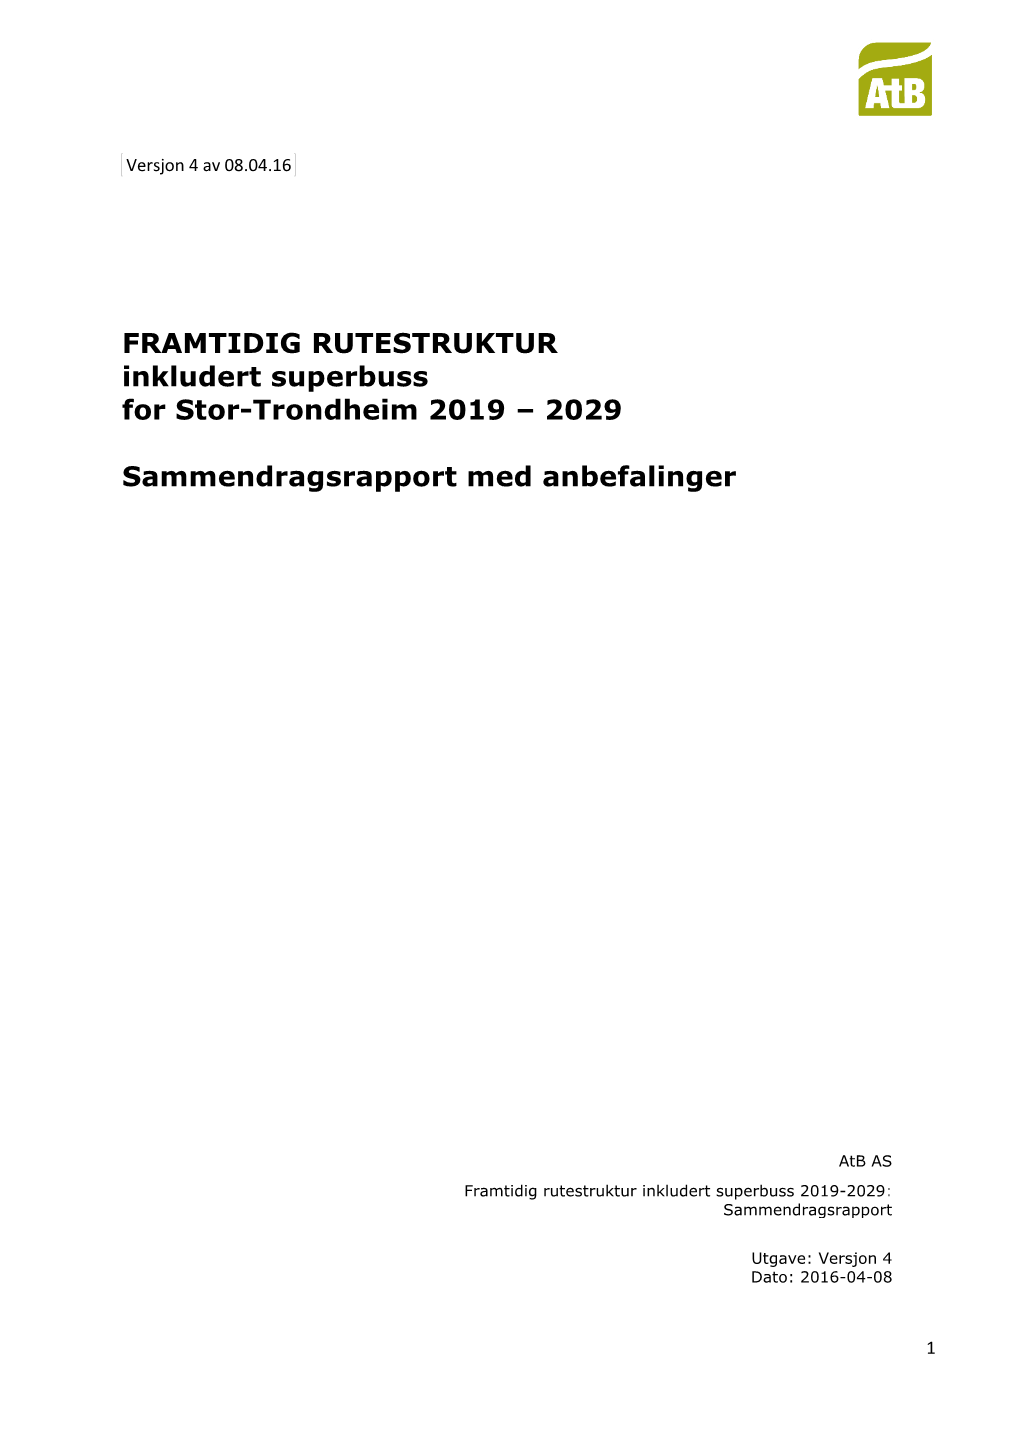 FRAMTIDIG RUTESTRUKTUR Inkludert Superbuss for Stor-Trondheim 2019 – 2029